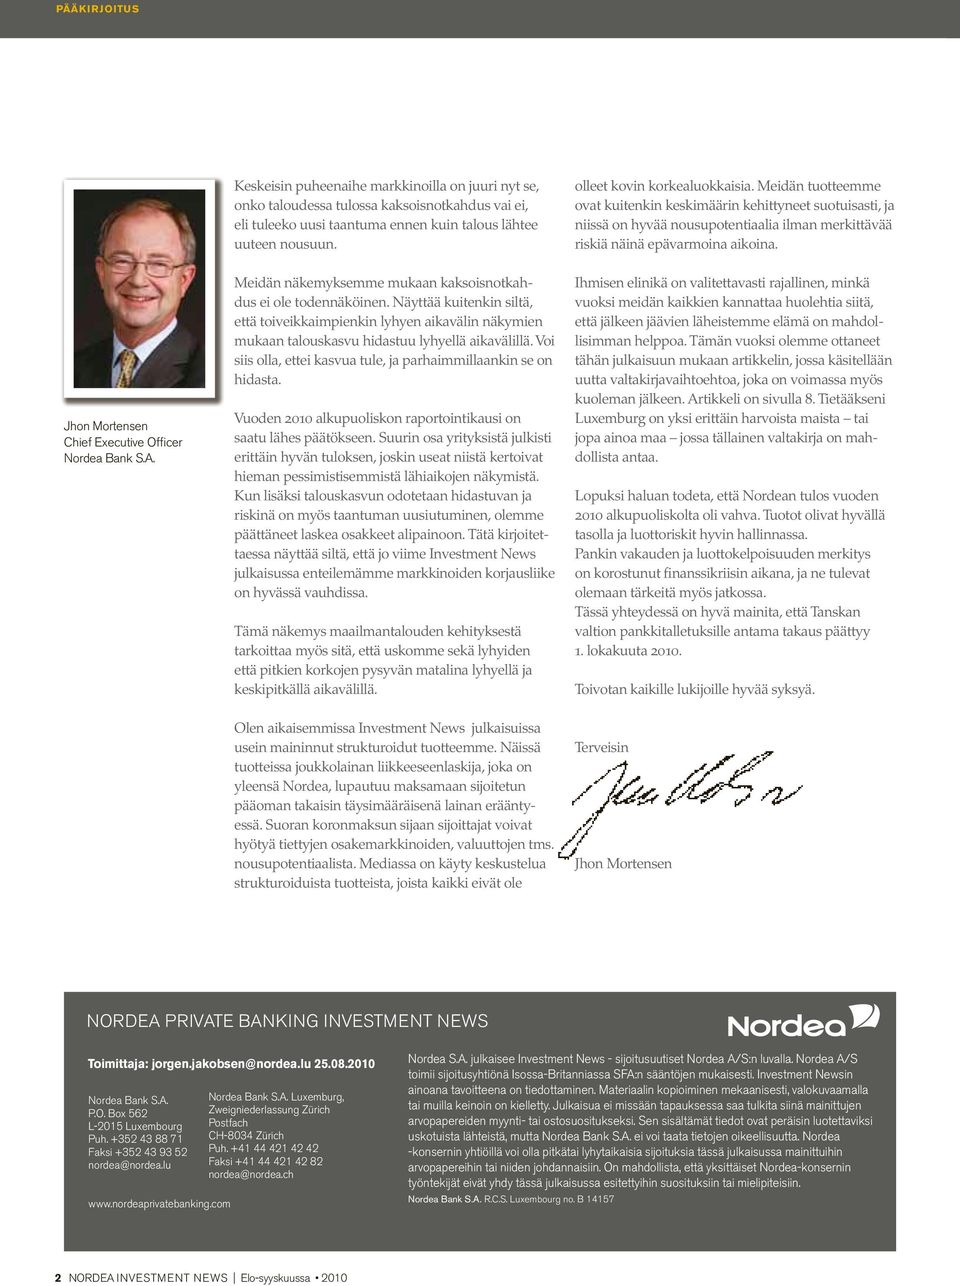 Jhon Mortensen Chief Executive Officer Nordea Bank S.A. Meidän näkemyksemme mukaan kaksoisnotkahdus ei ole todennäköinen.